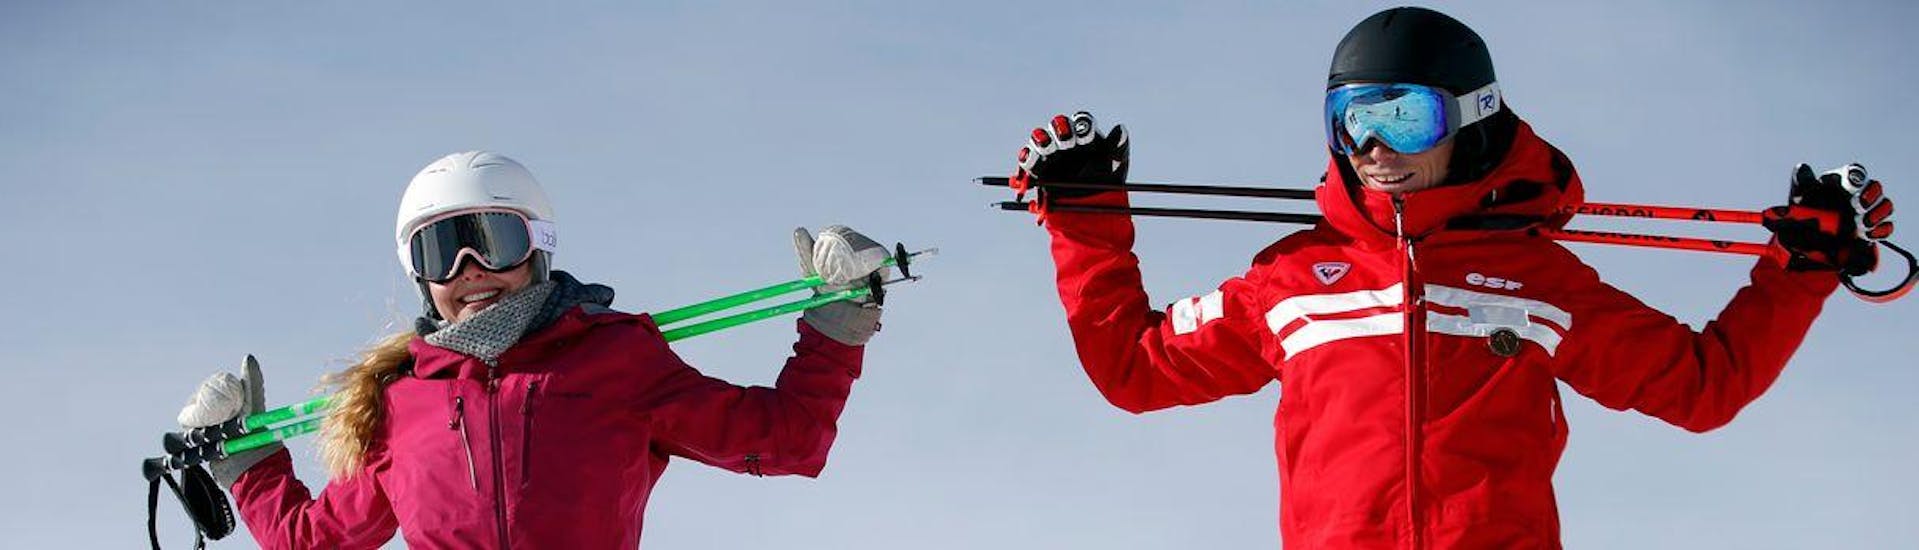 Privé skilessen voor kinderen voor alle niveaus.